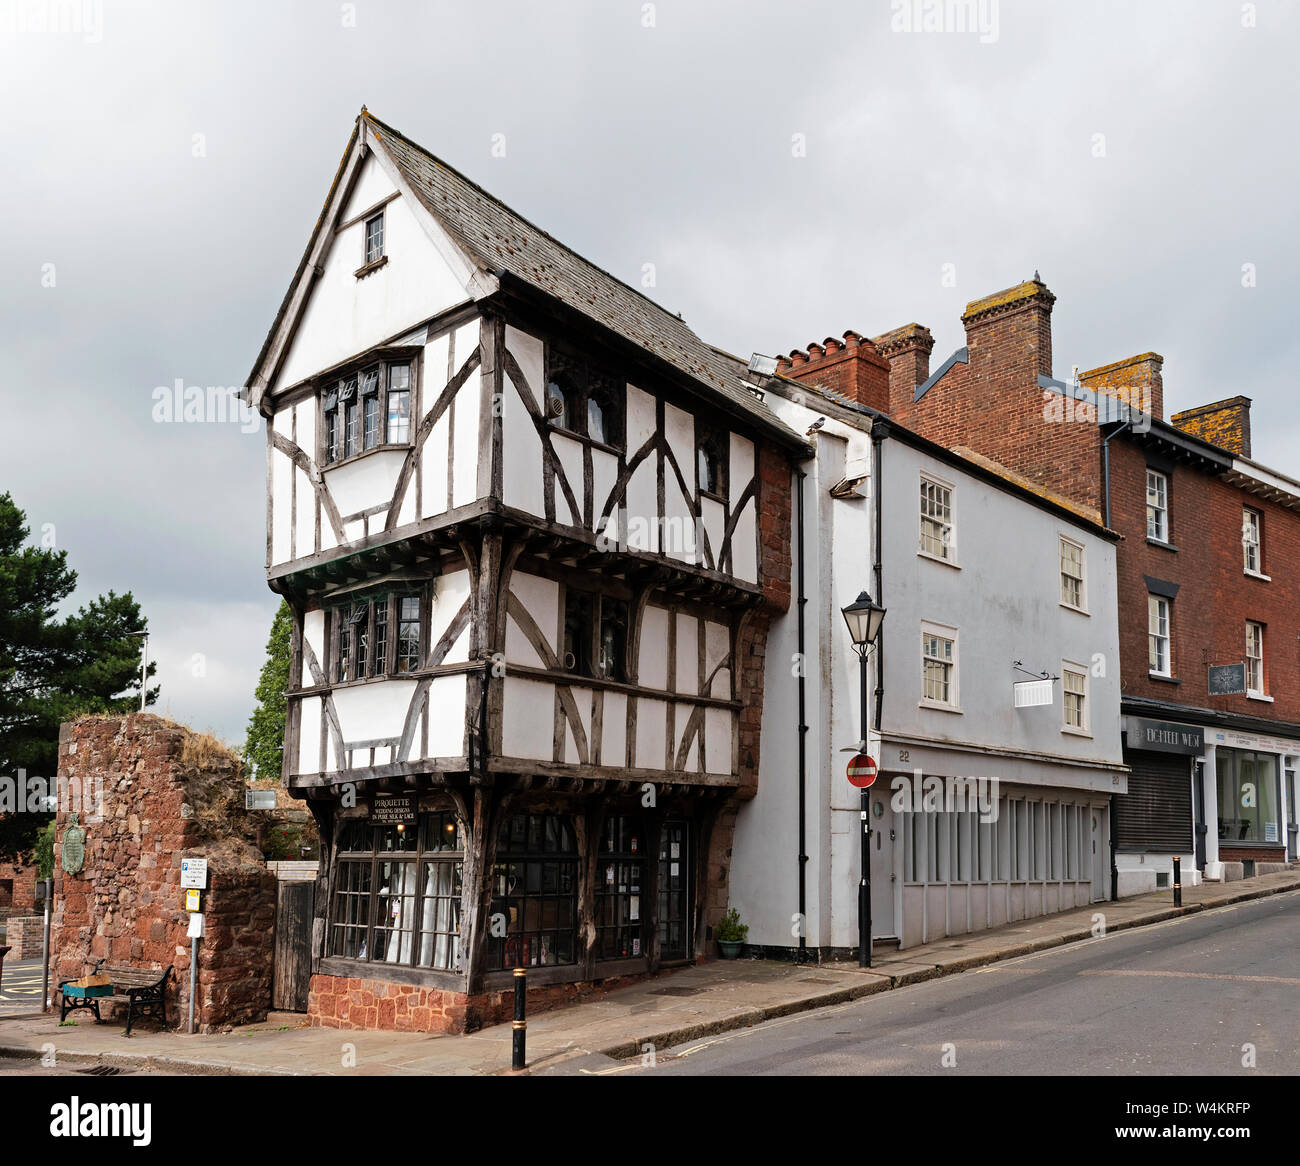 Historique Le 15 siècle qui s'est déplacé à Exeter, Devon, Angleterre, Grande-Bretagne, Royaume-Uni. Banque D'Images